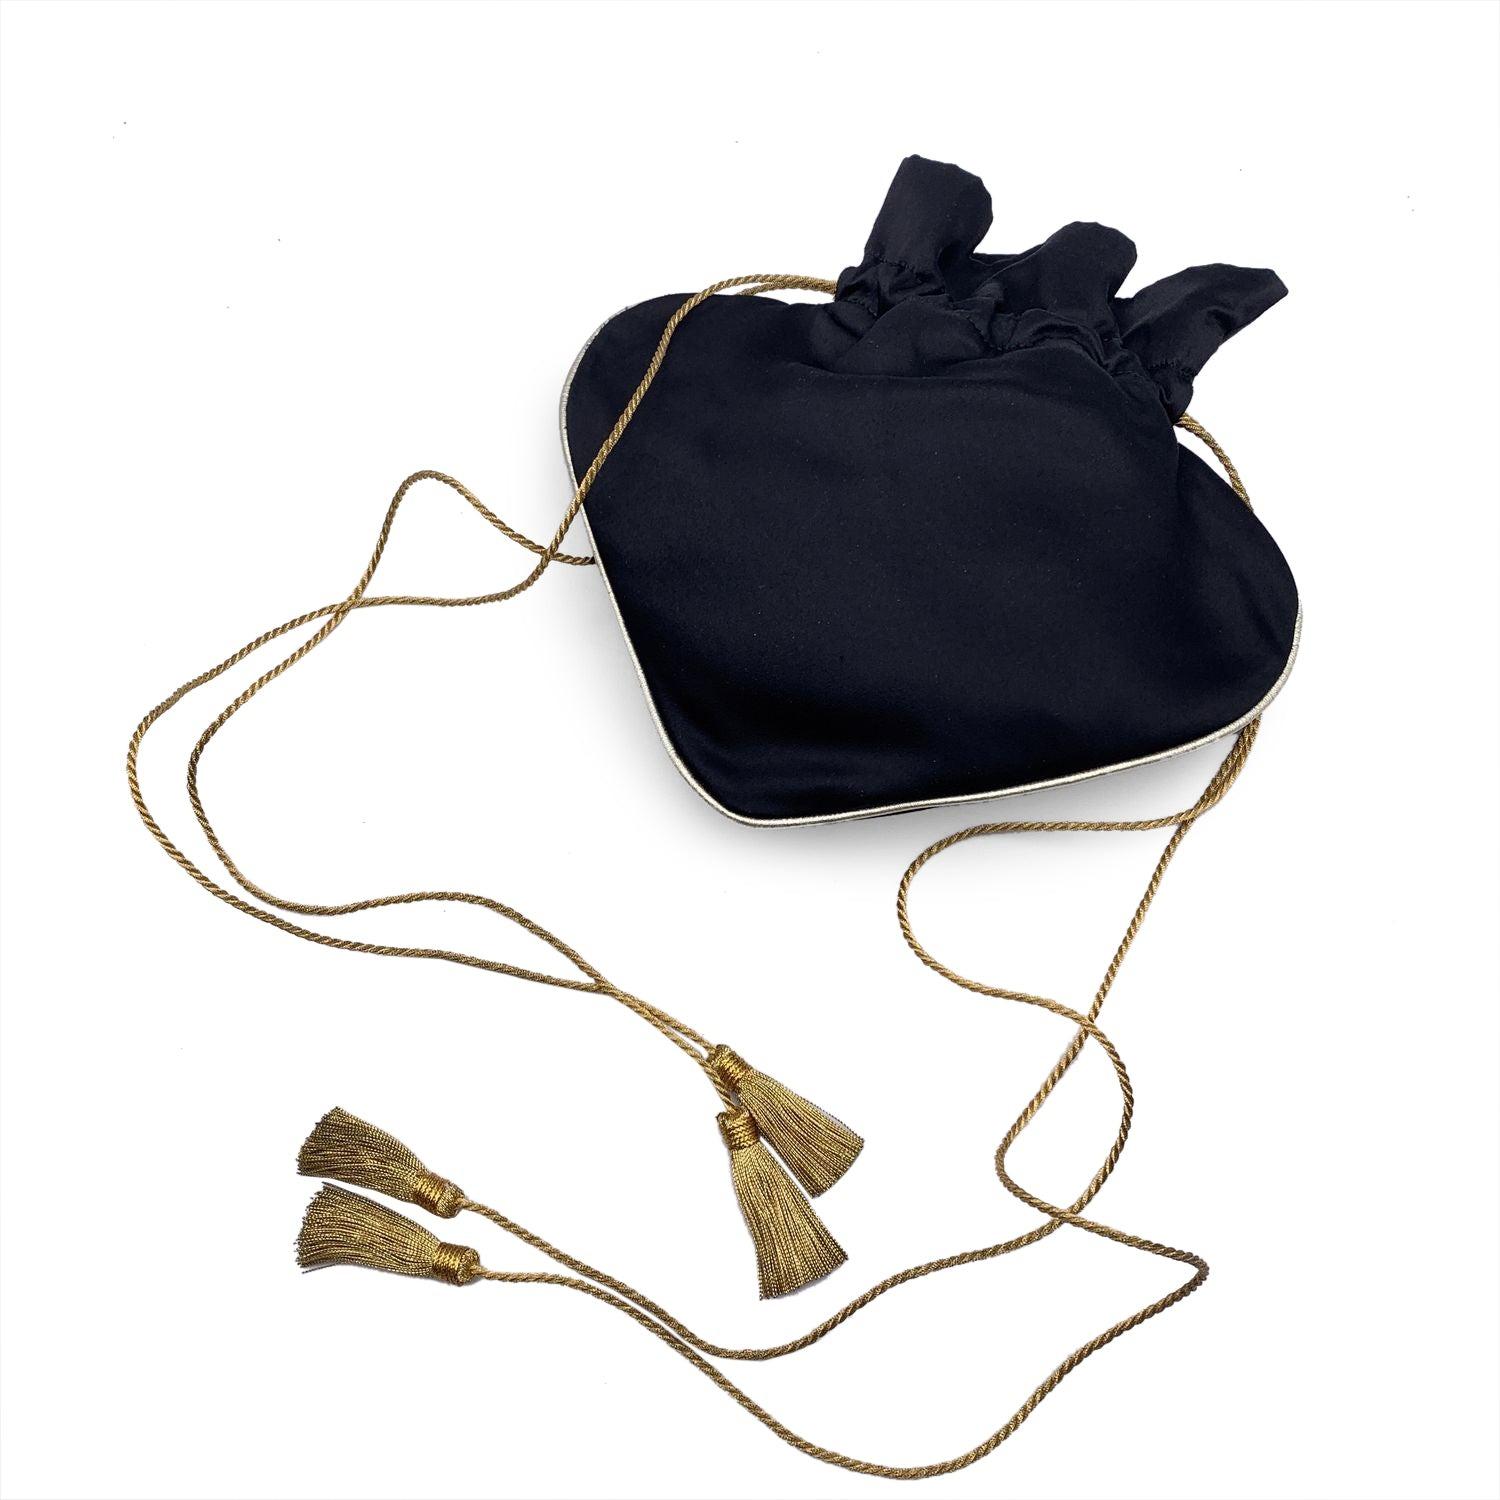 Wunderschöne, seltene kleine Abendtasche mit Kordelzug von Yves Saint Laurent. Die Tasche aus schwarzem Satin mit goldenem Metallbesatz ist in Form eines Pik-As gestaltet. Verschluss mit Kordelzug. Schwarzes Innenfutter. Verstellbarer Schultergurt.